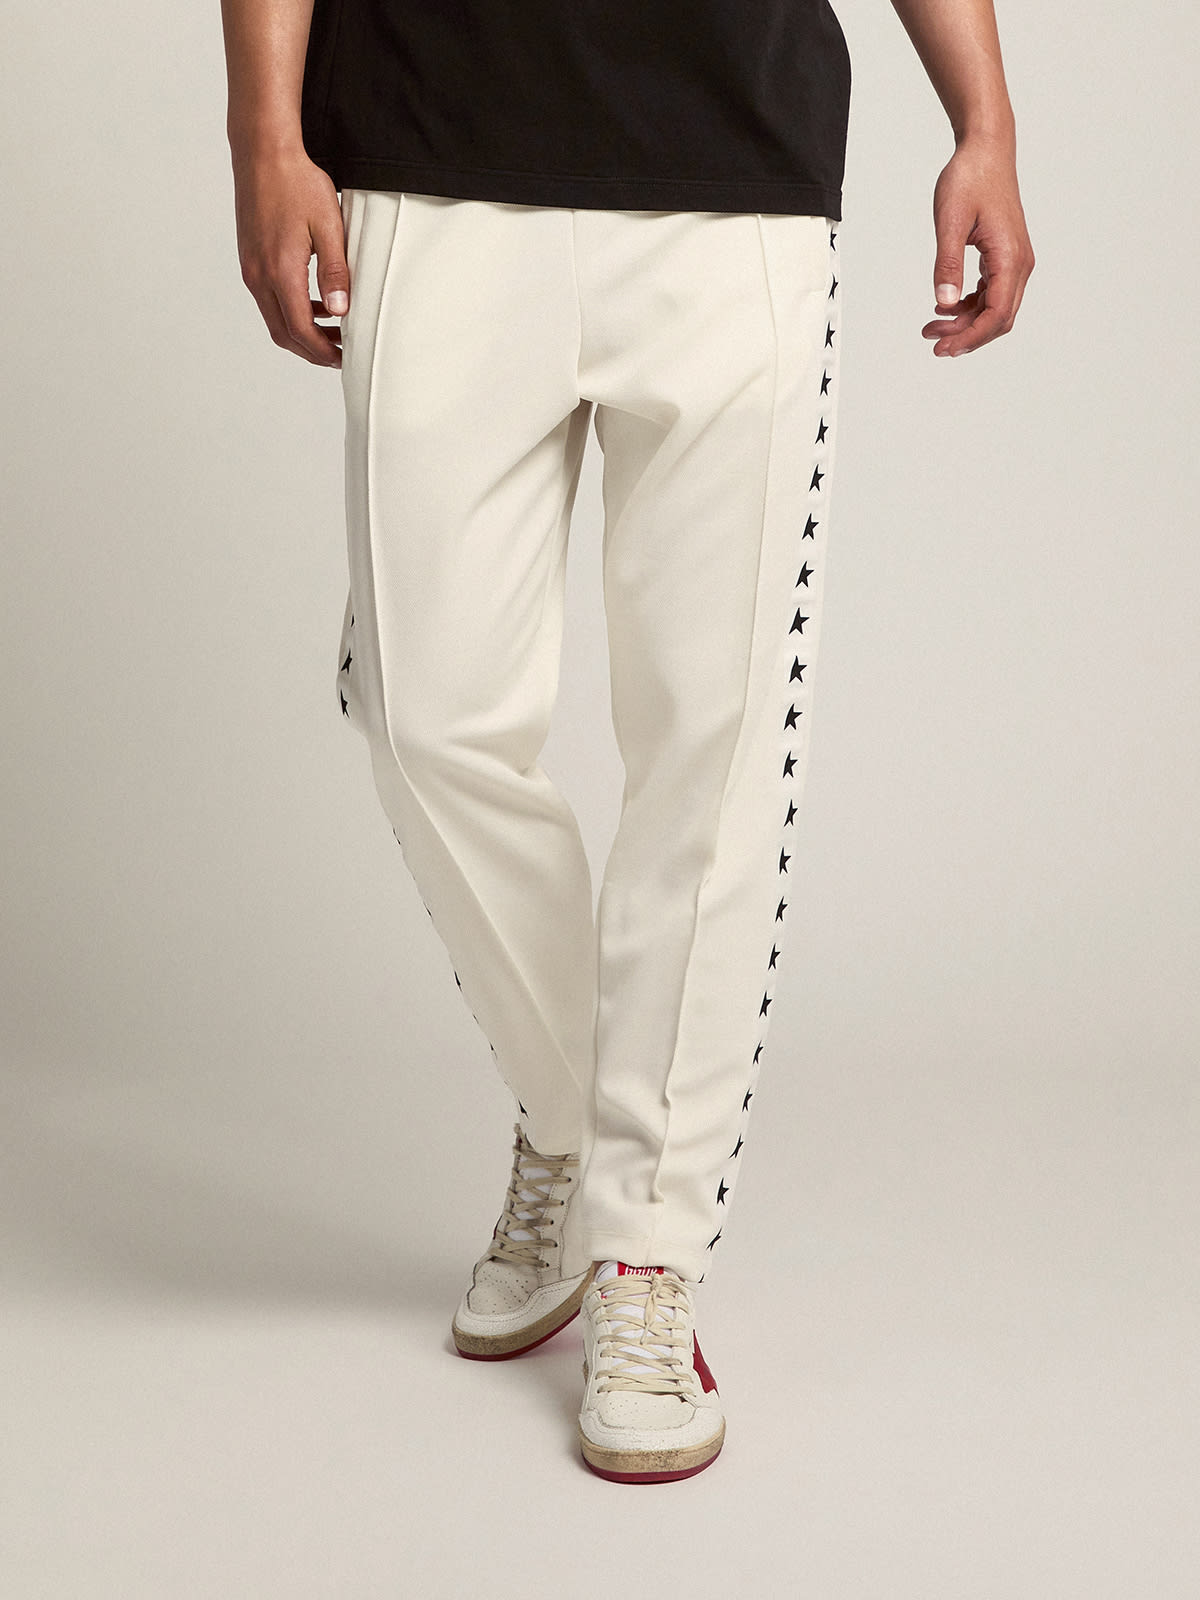 Golden Goose - Pantalon de jogging blanc avec étoiles noires sur les côtés in 